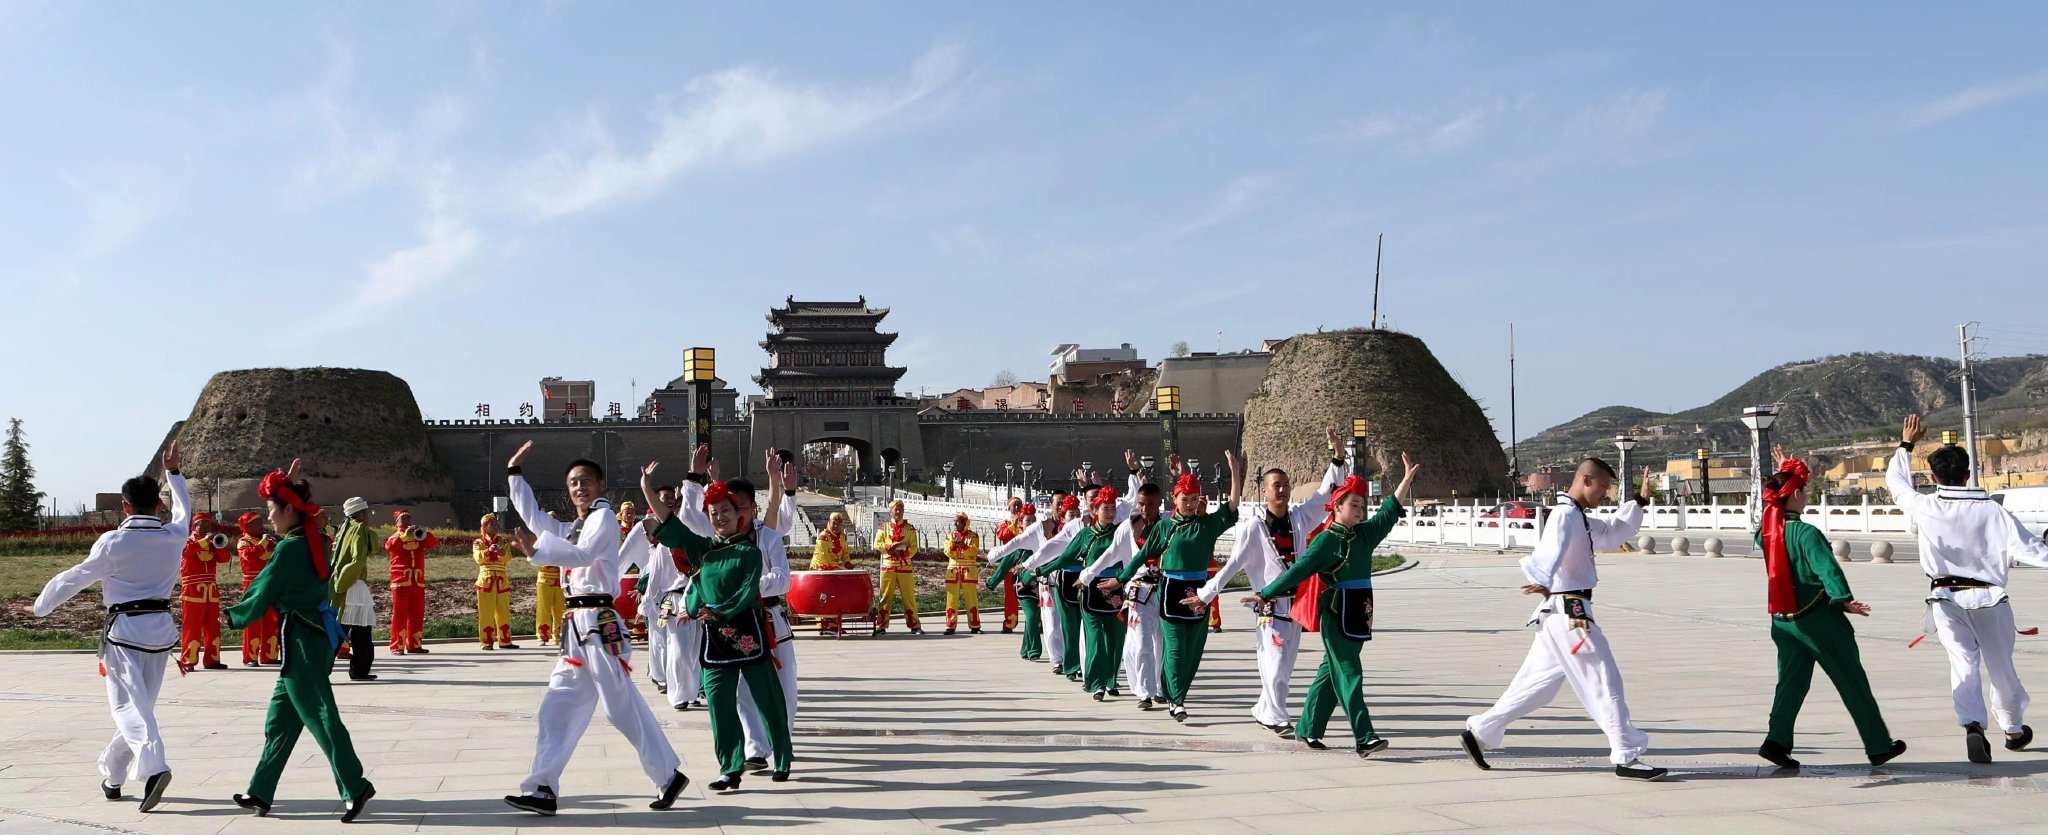 庆城秧歌队在城门广场表演陇东秧歌。（资料图）慕斌摄